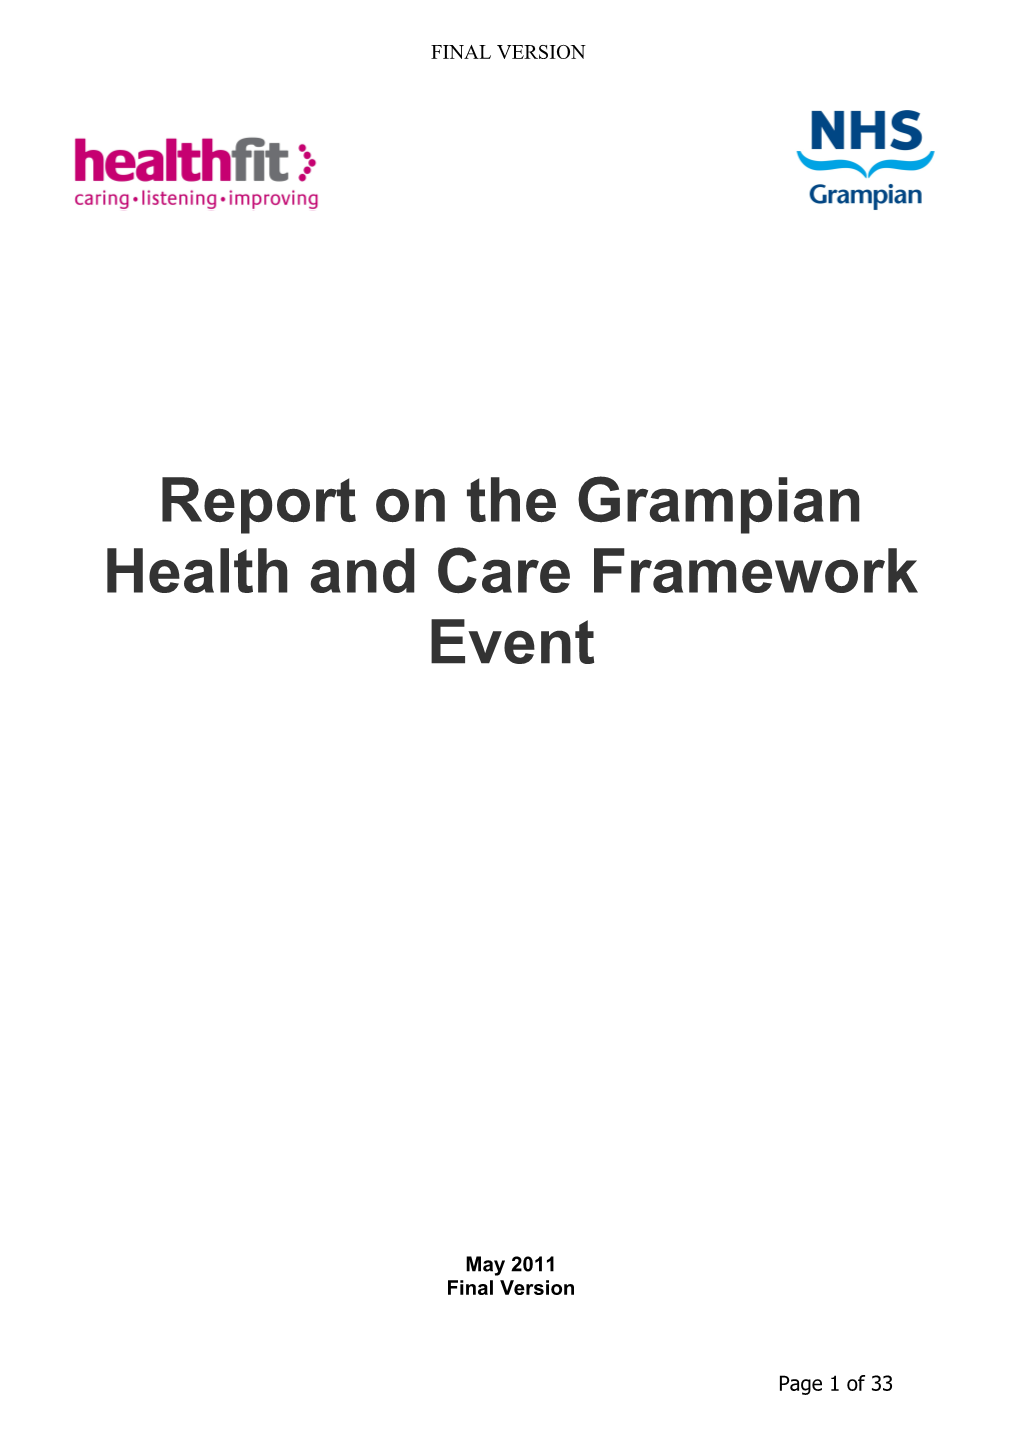 Item 5.5 for 7 June 2011 Health & Care Framework Doc